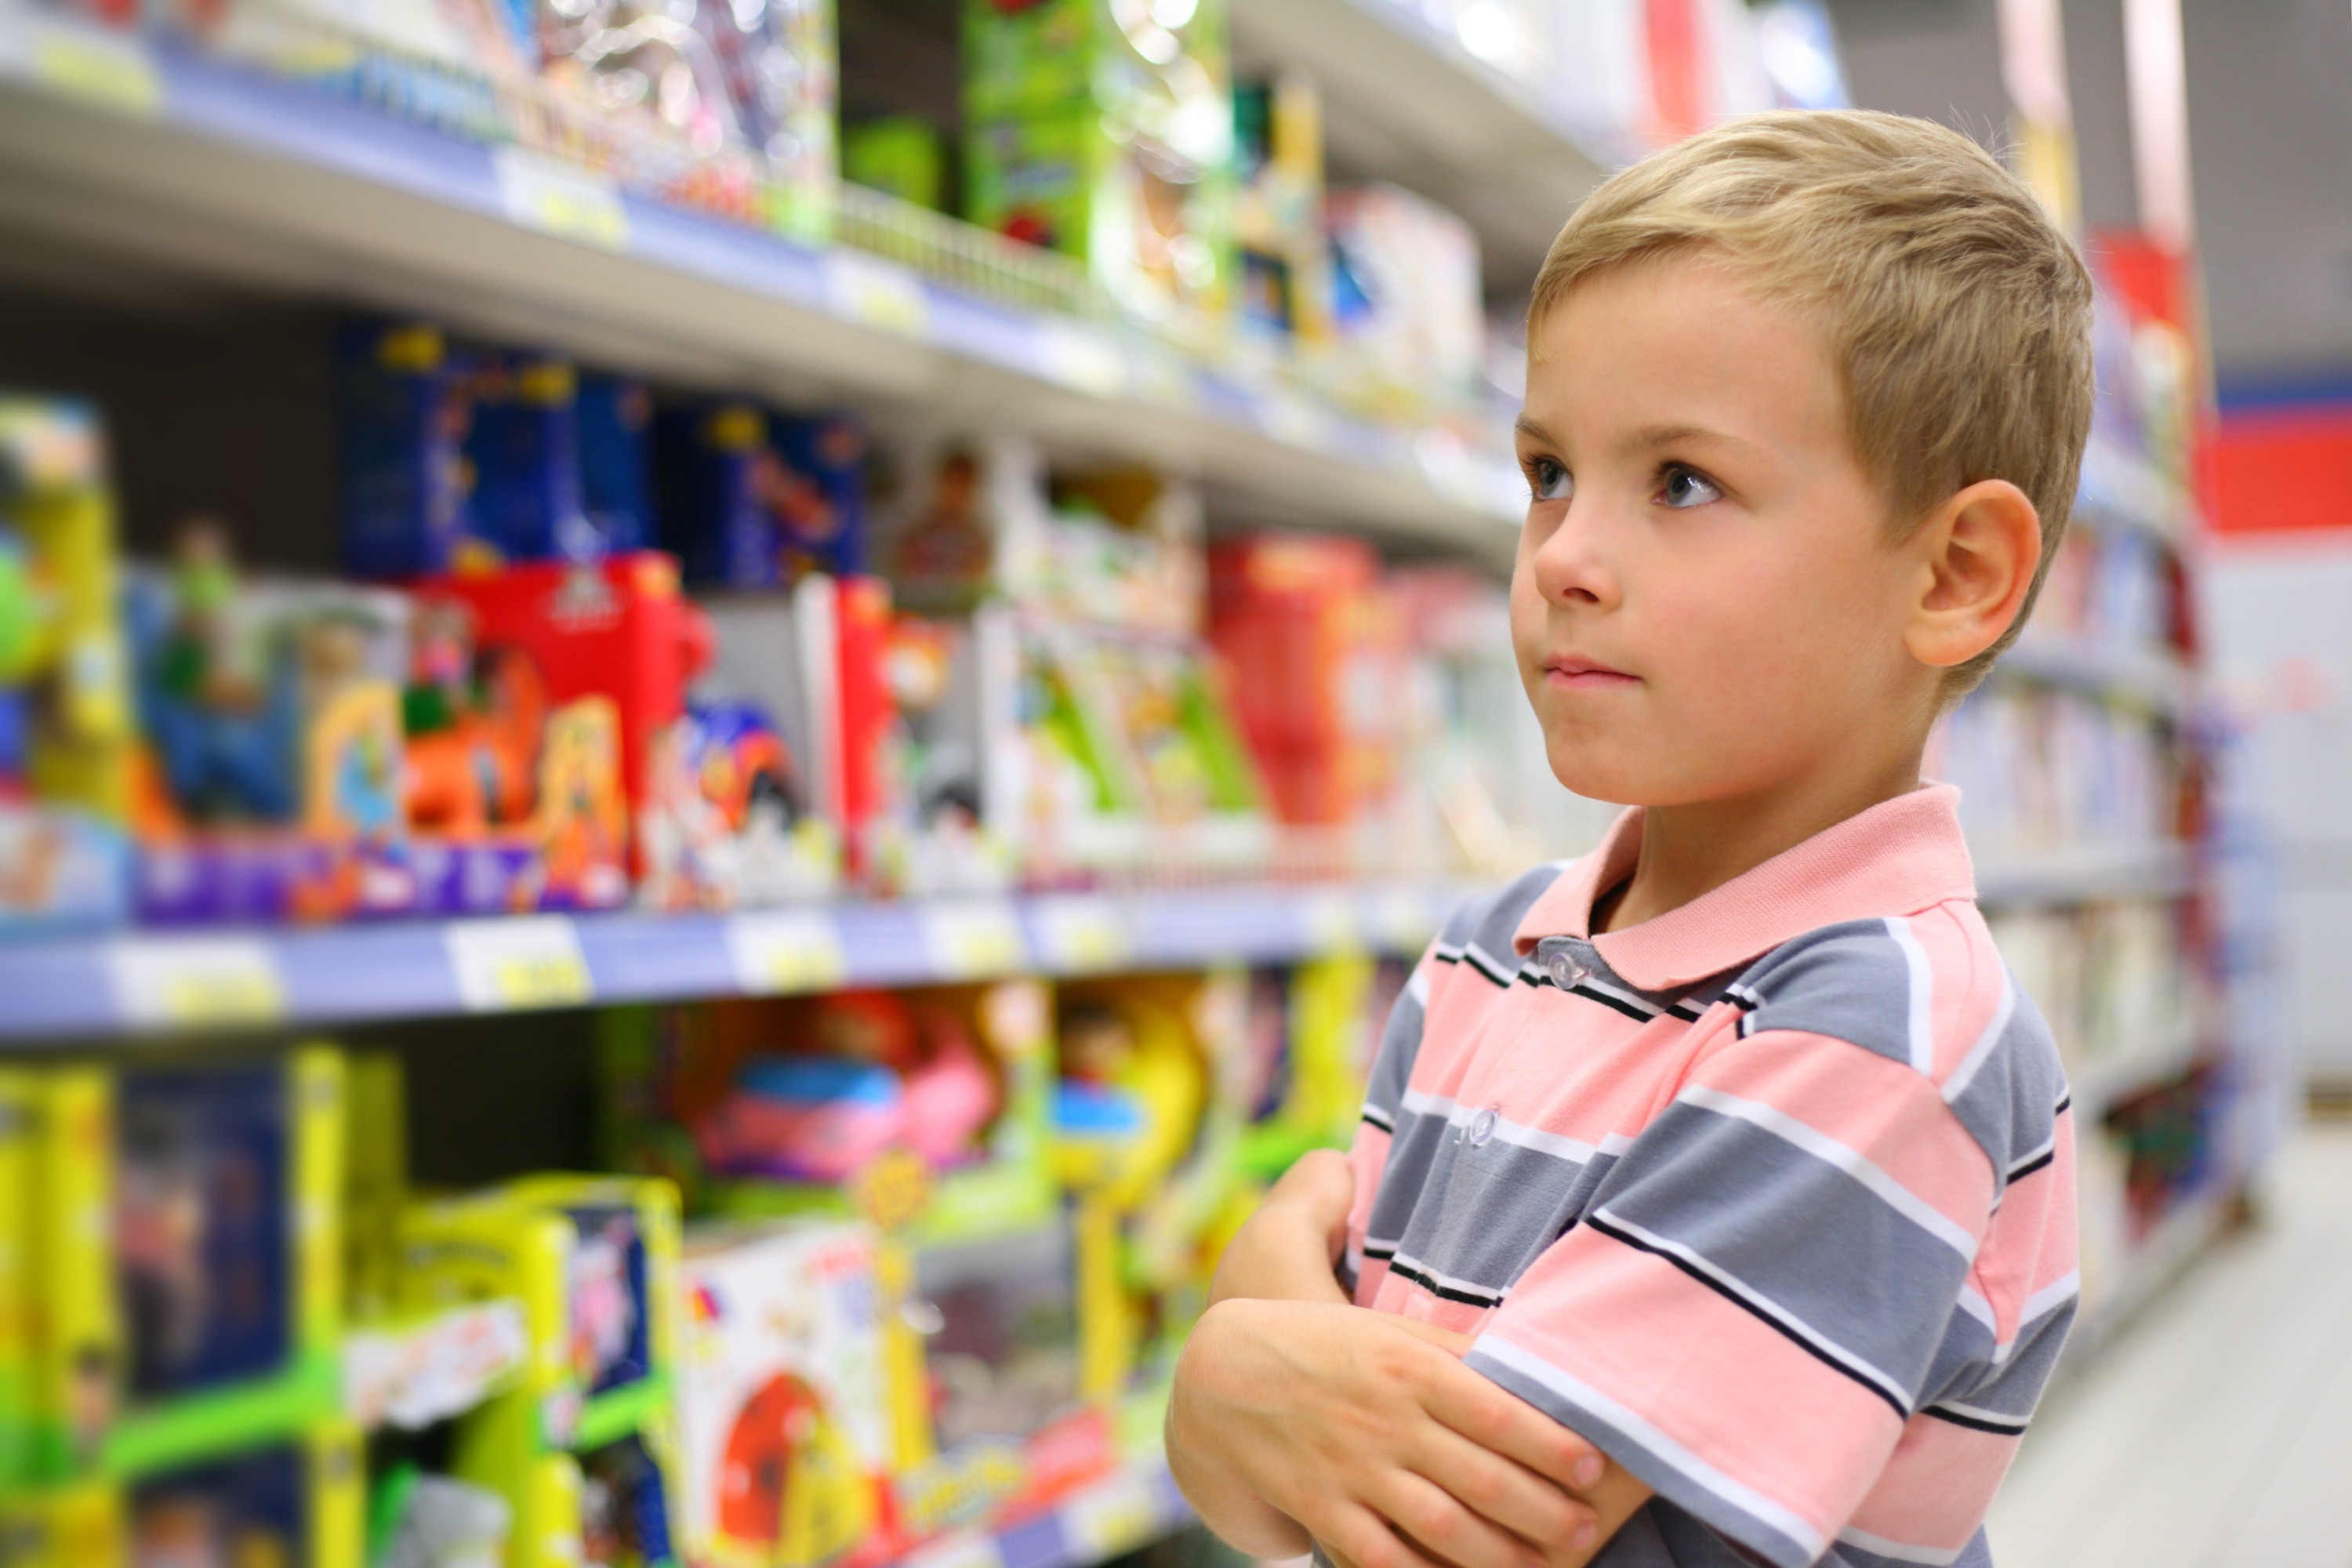 criança com alergia alimentar observa rótulos de alimentos  (Foto: Thinkstock)